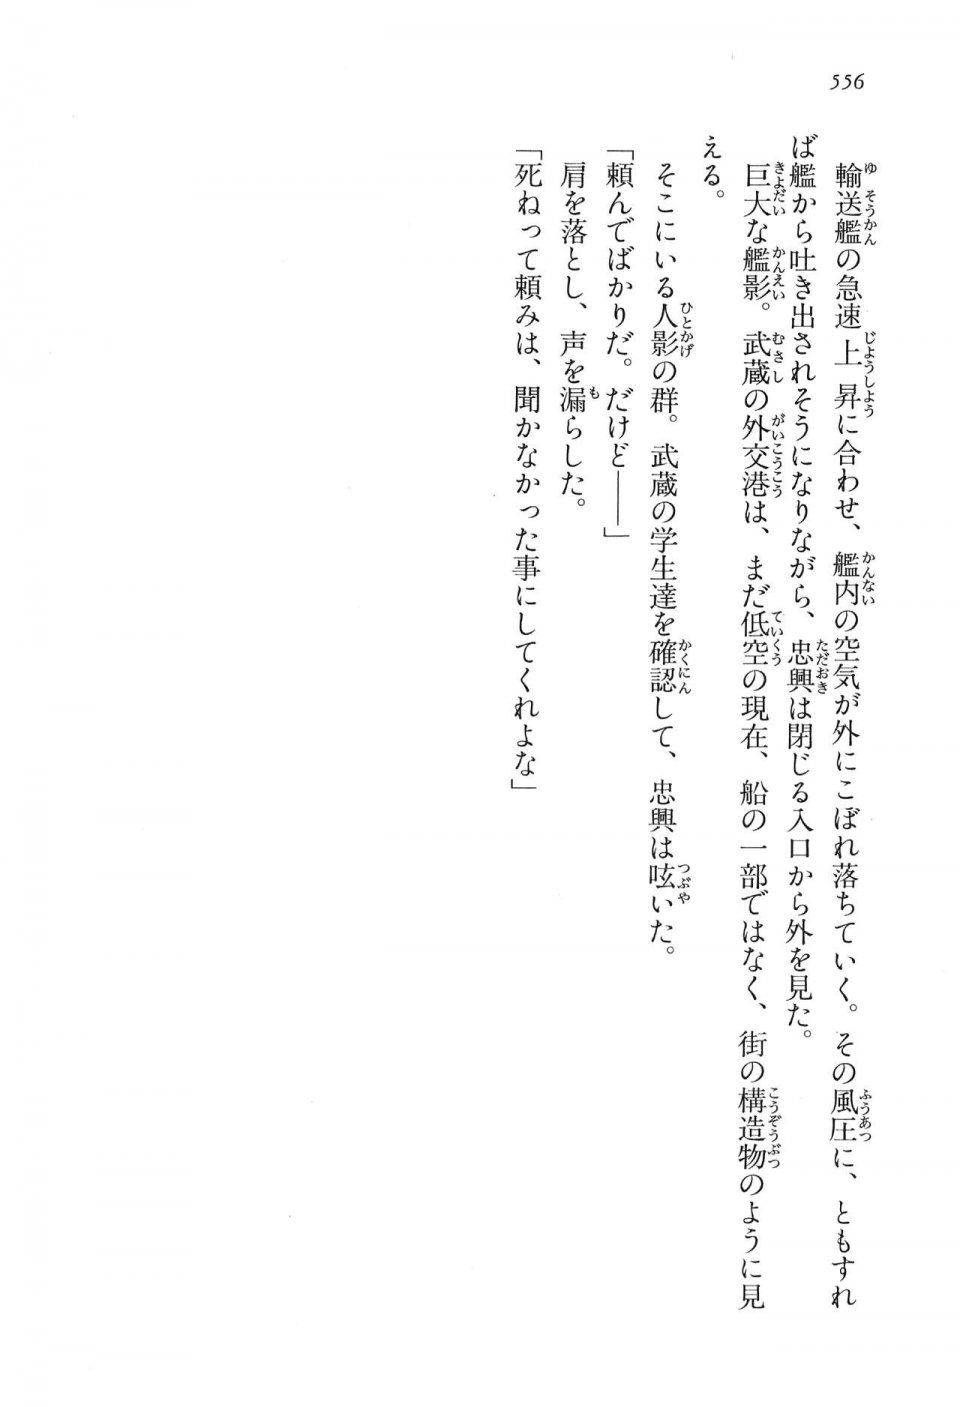 Kyoukai Senjou no Horizon LN Vol 16(7A) - Photo #556